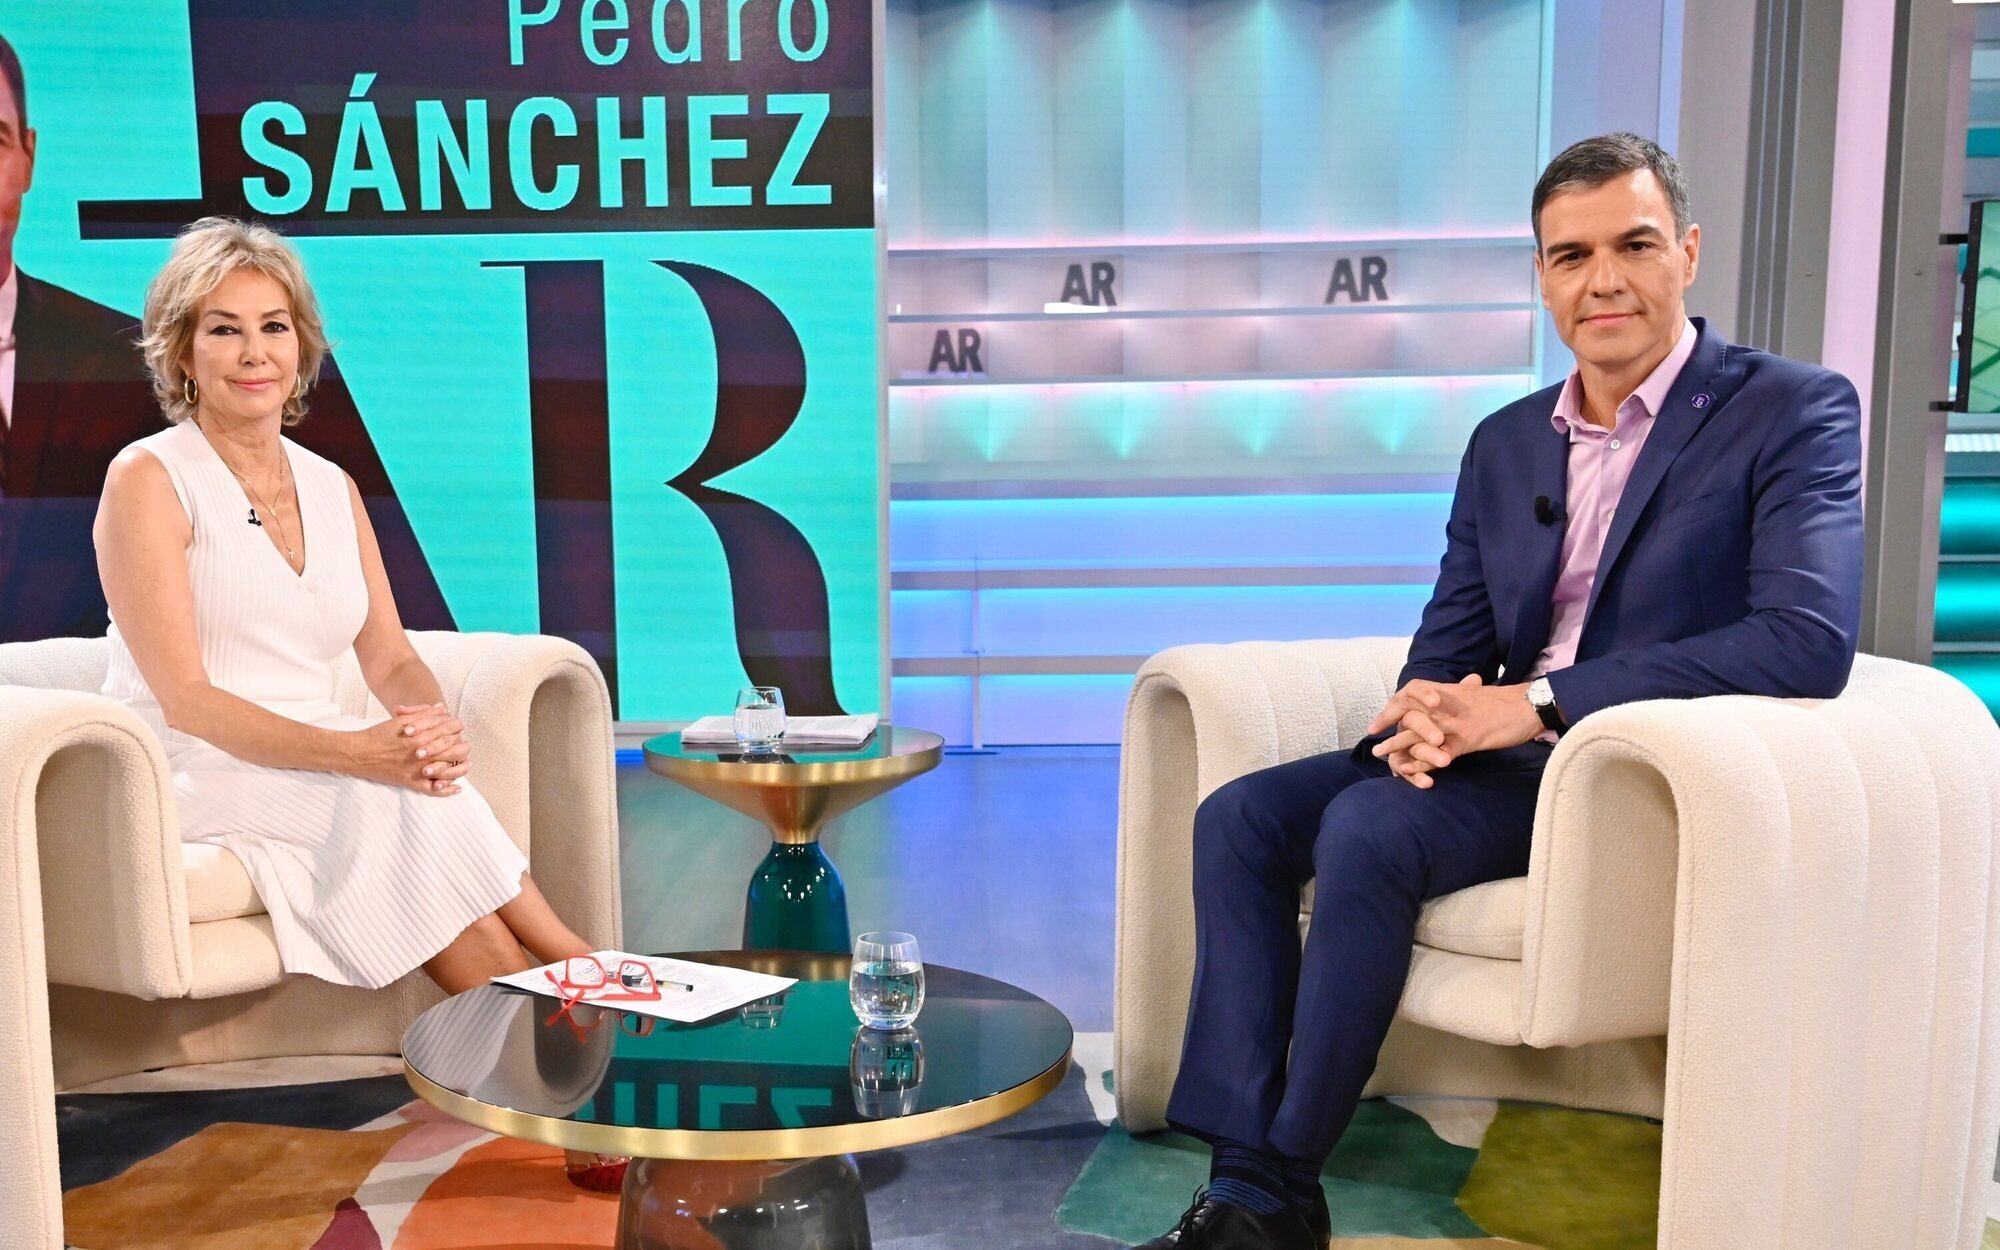 Pedro Sánchez arrasa en 'El programa de Ana Rosa' (22,5%) con una clara victoria sobre Feijóo